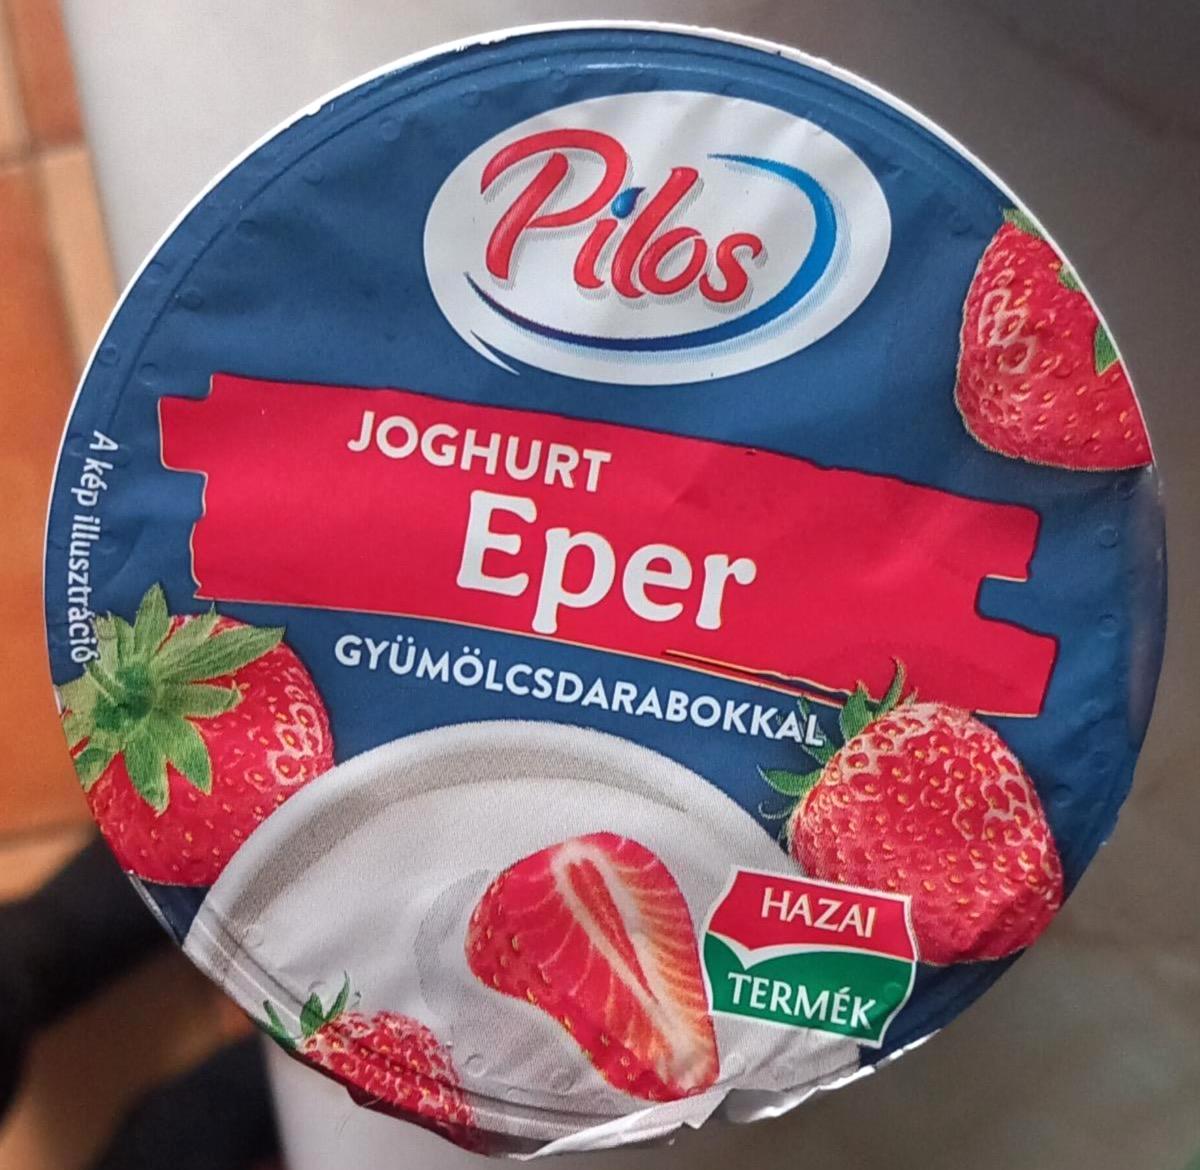 Képek - Epres joghurt gyümölcsdarabokkal Pilos